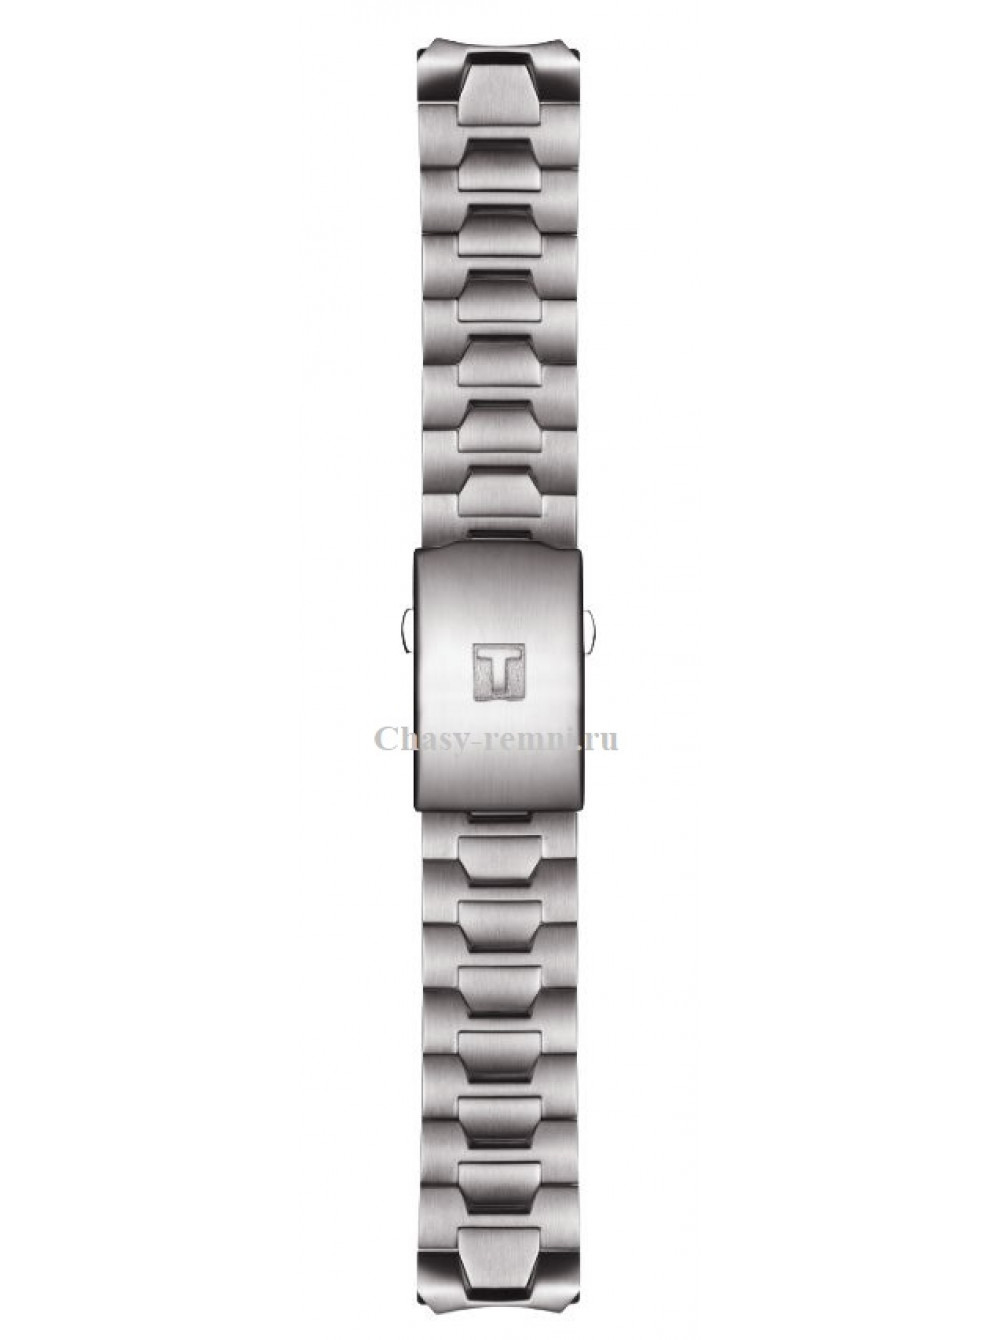 Браслет часов тиссот металлический. Tissot t605026146. Титановый браслет для Tissot t-Touch t013420a. Tissot t.47.1.685.81. Ремешок для часов тиссот т тач.